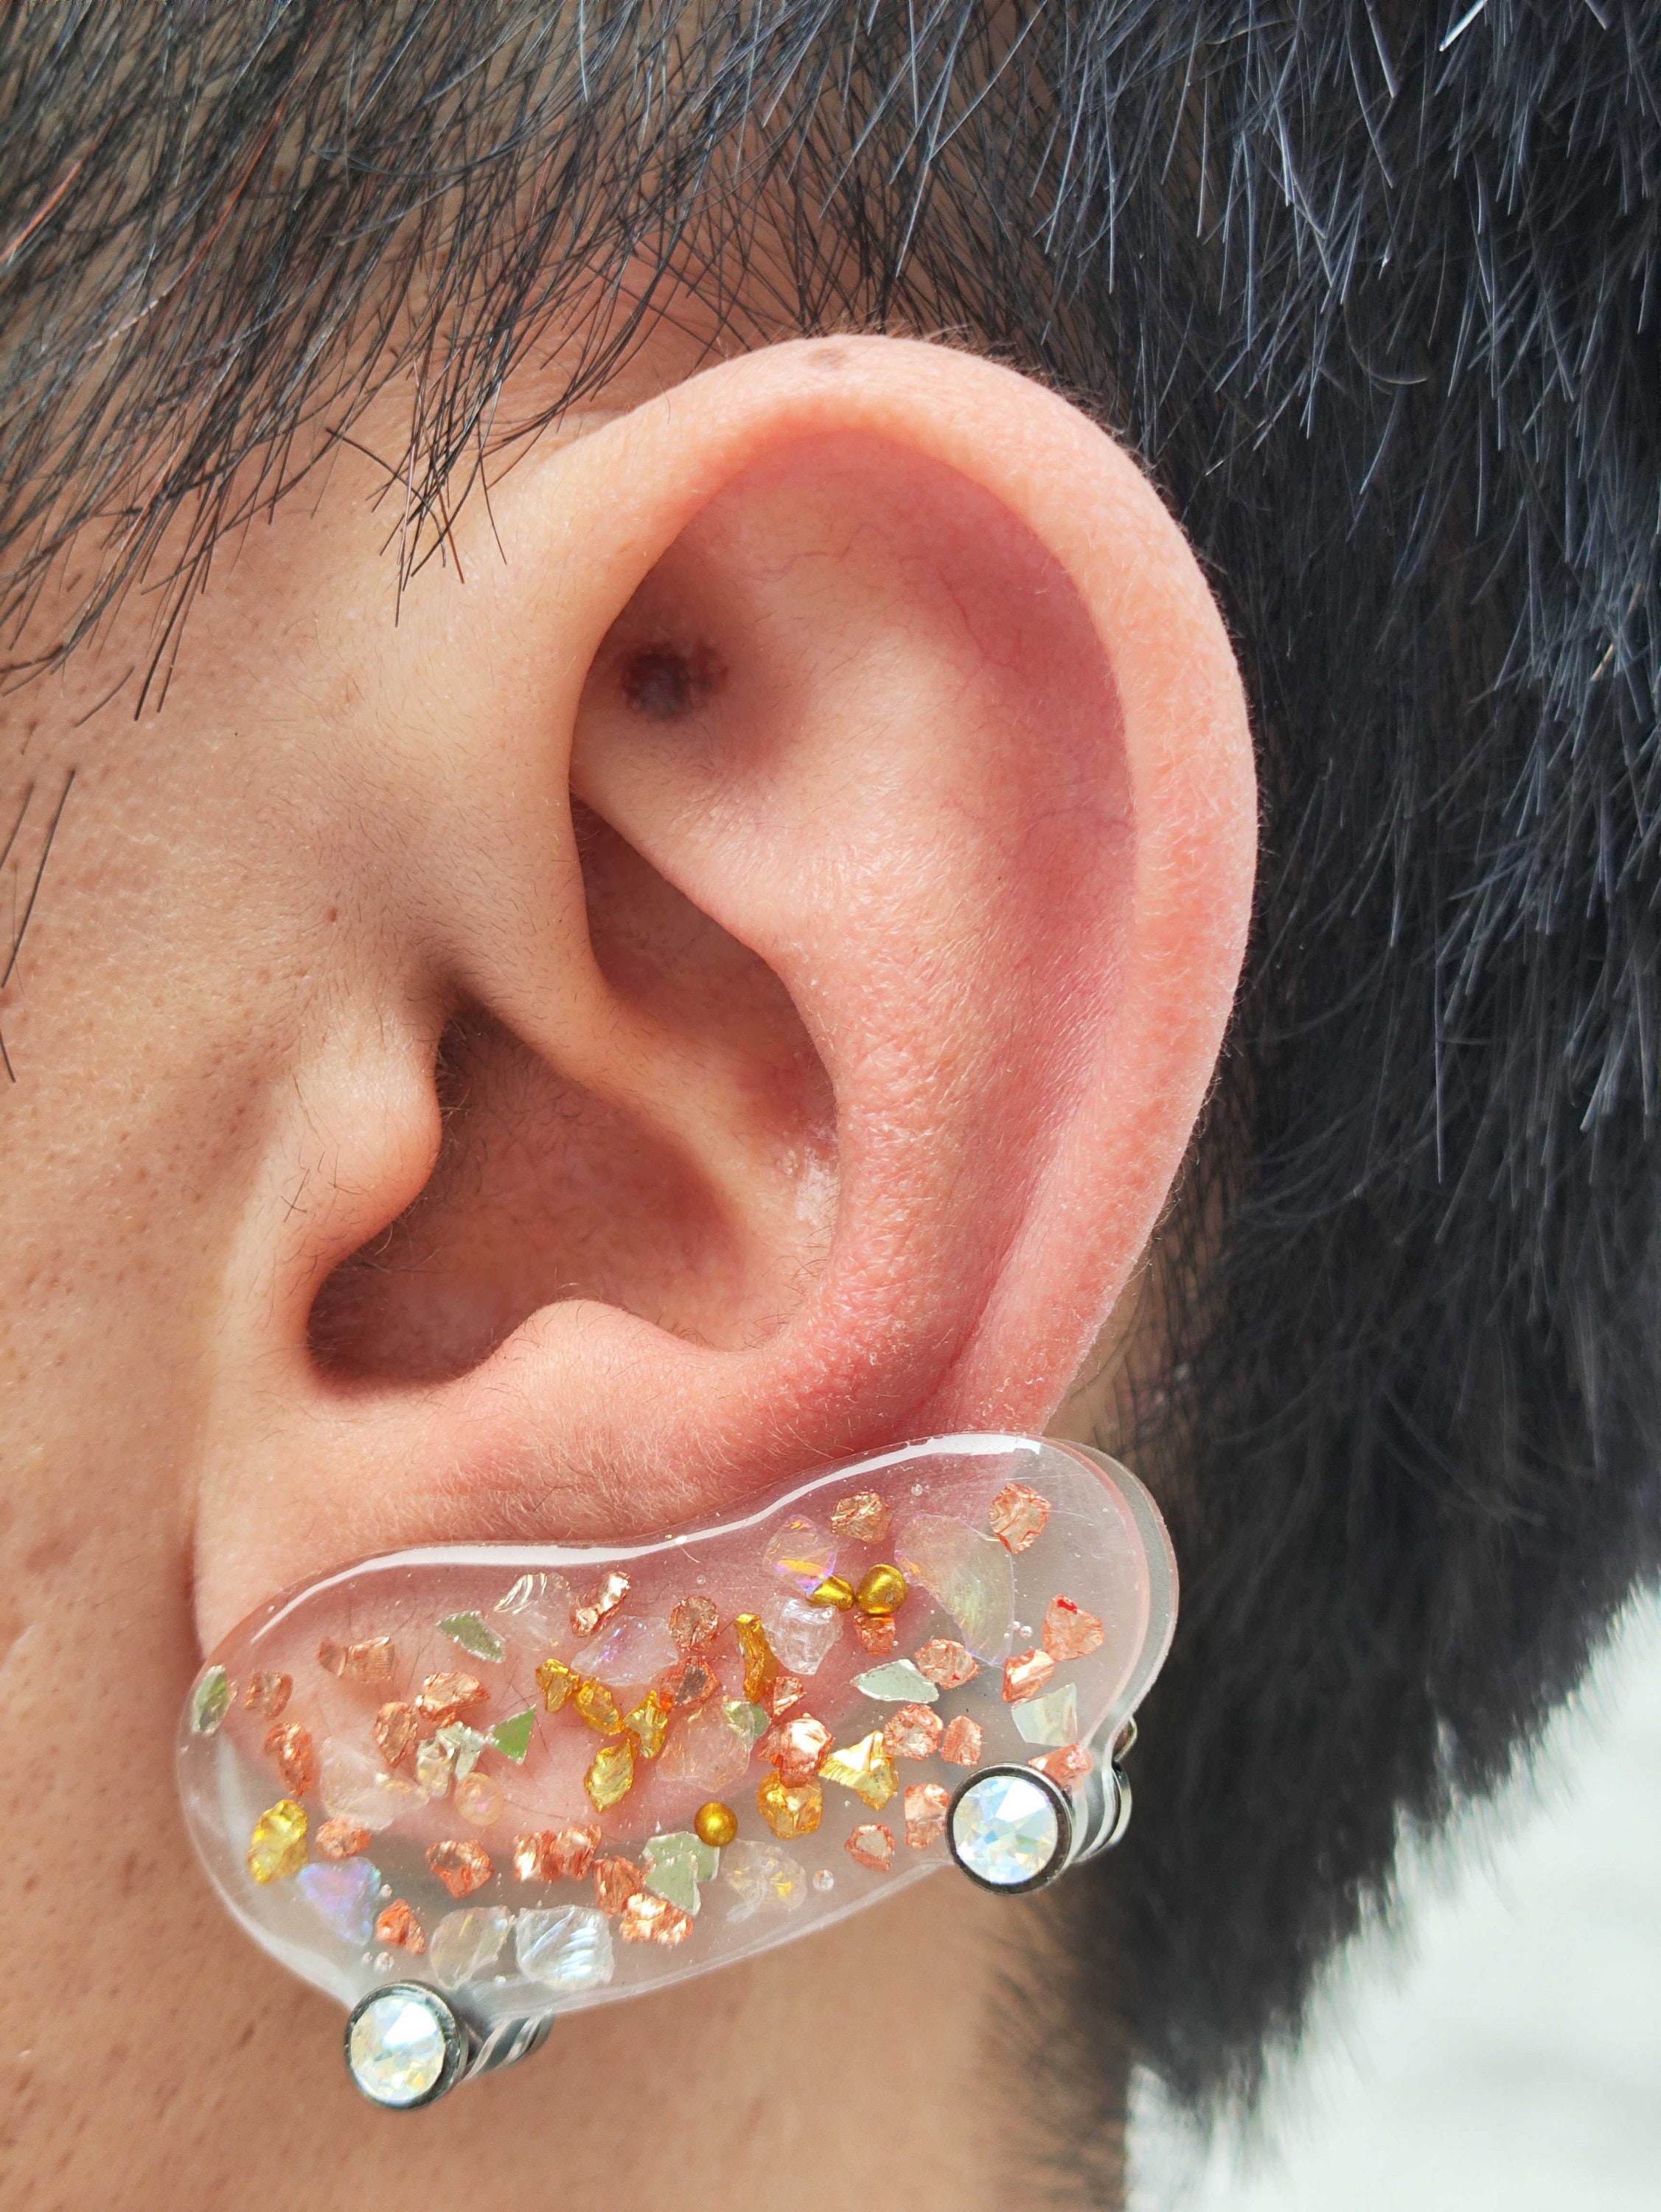 20mm 0.79 Keloid Earring Compression. Keloid Prevention Earring